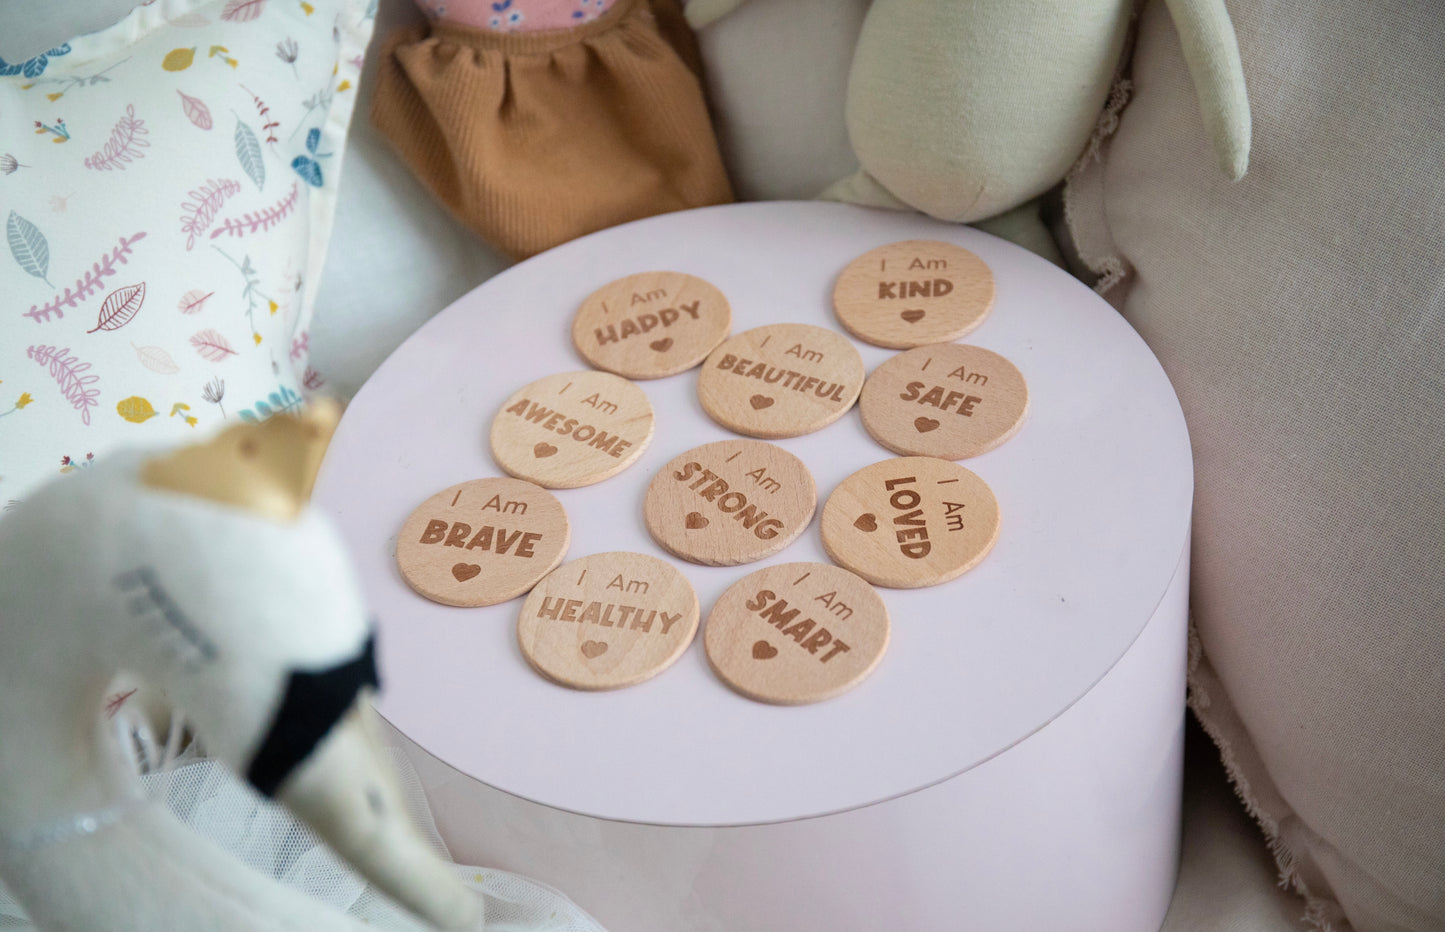 Wooden Affirmation Discs for Kids